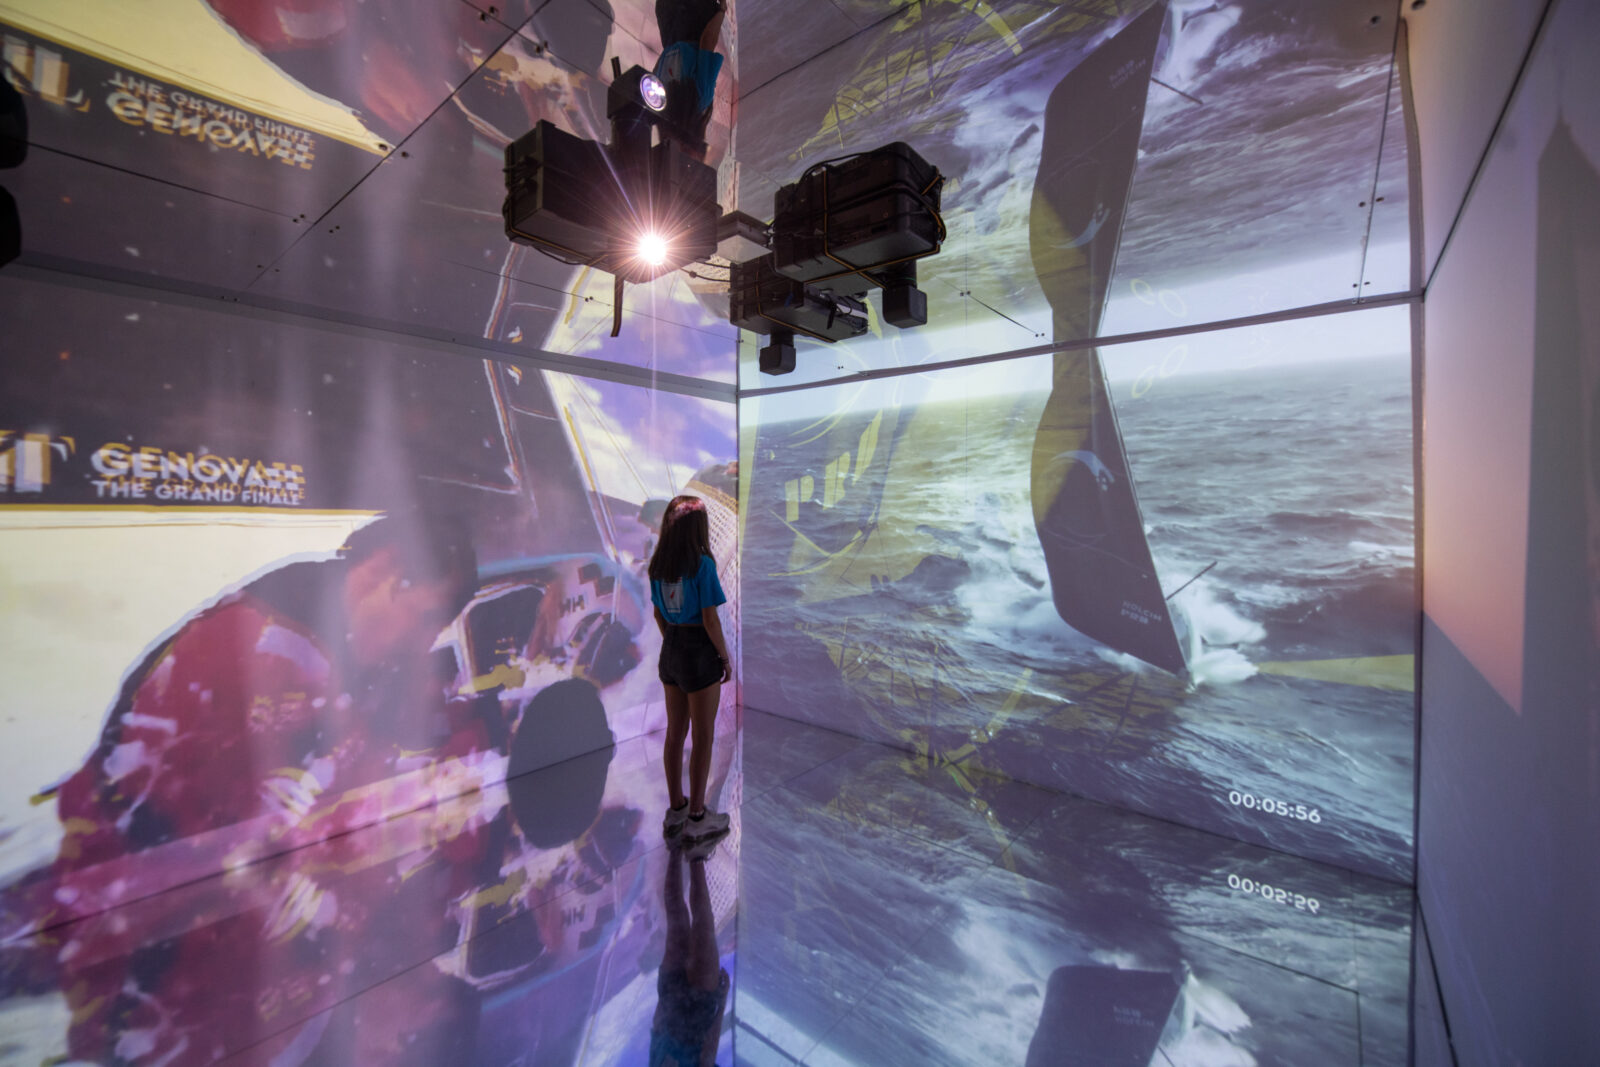 proiezioni all'interno della camera immersiva durante l'ocean race a genova